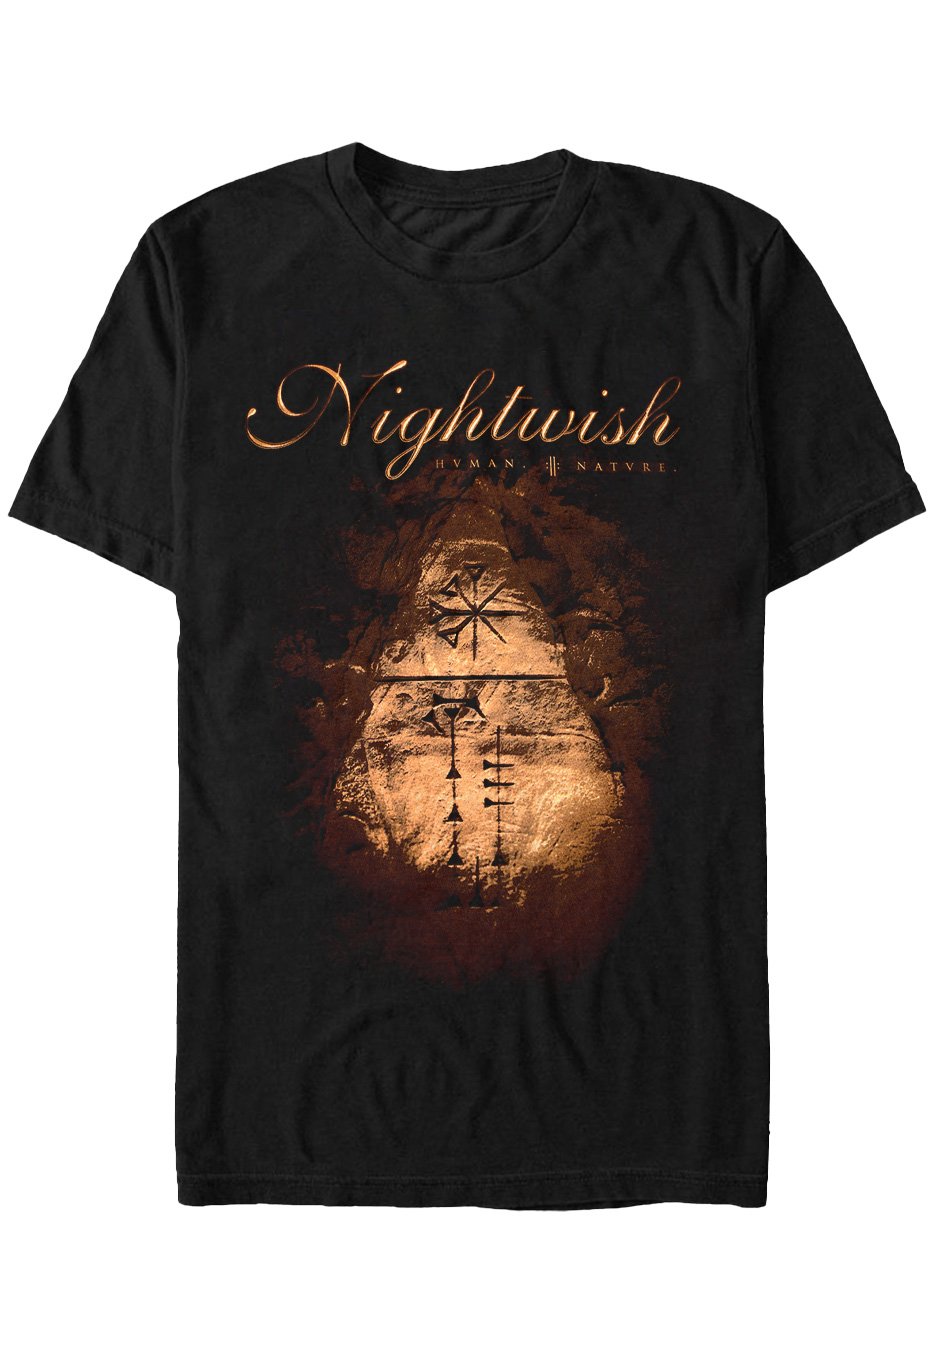 Nightwish - Human. Nature. - T-Shirt